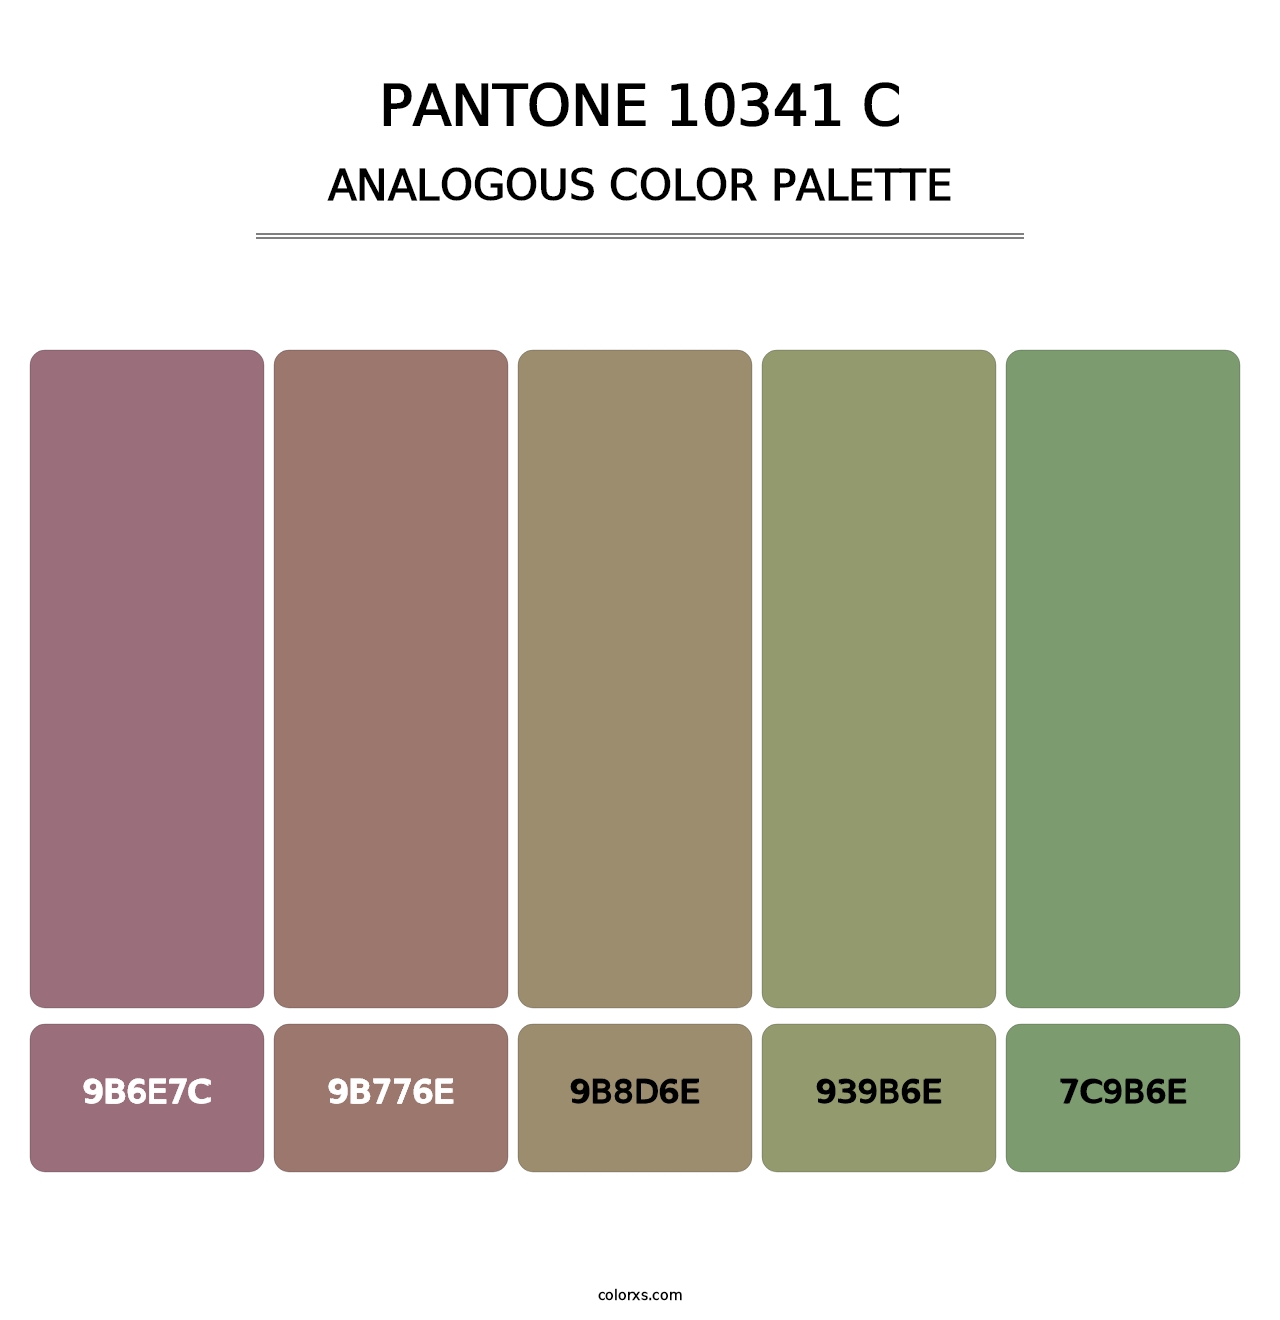 PANTONE 10341 C - Analogous Color Palette